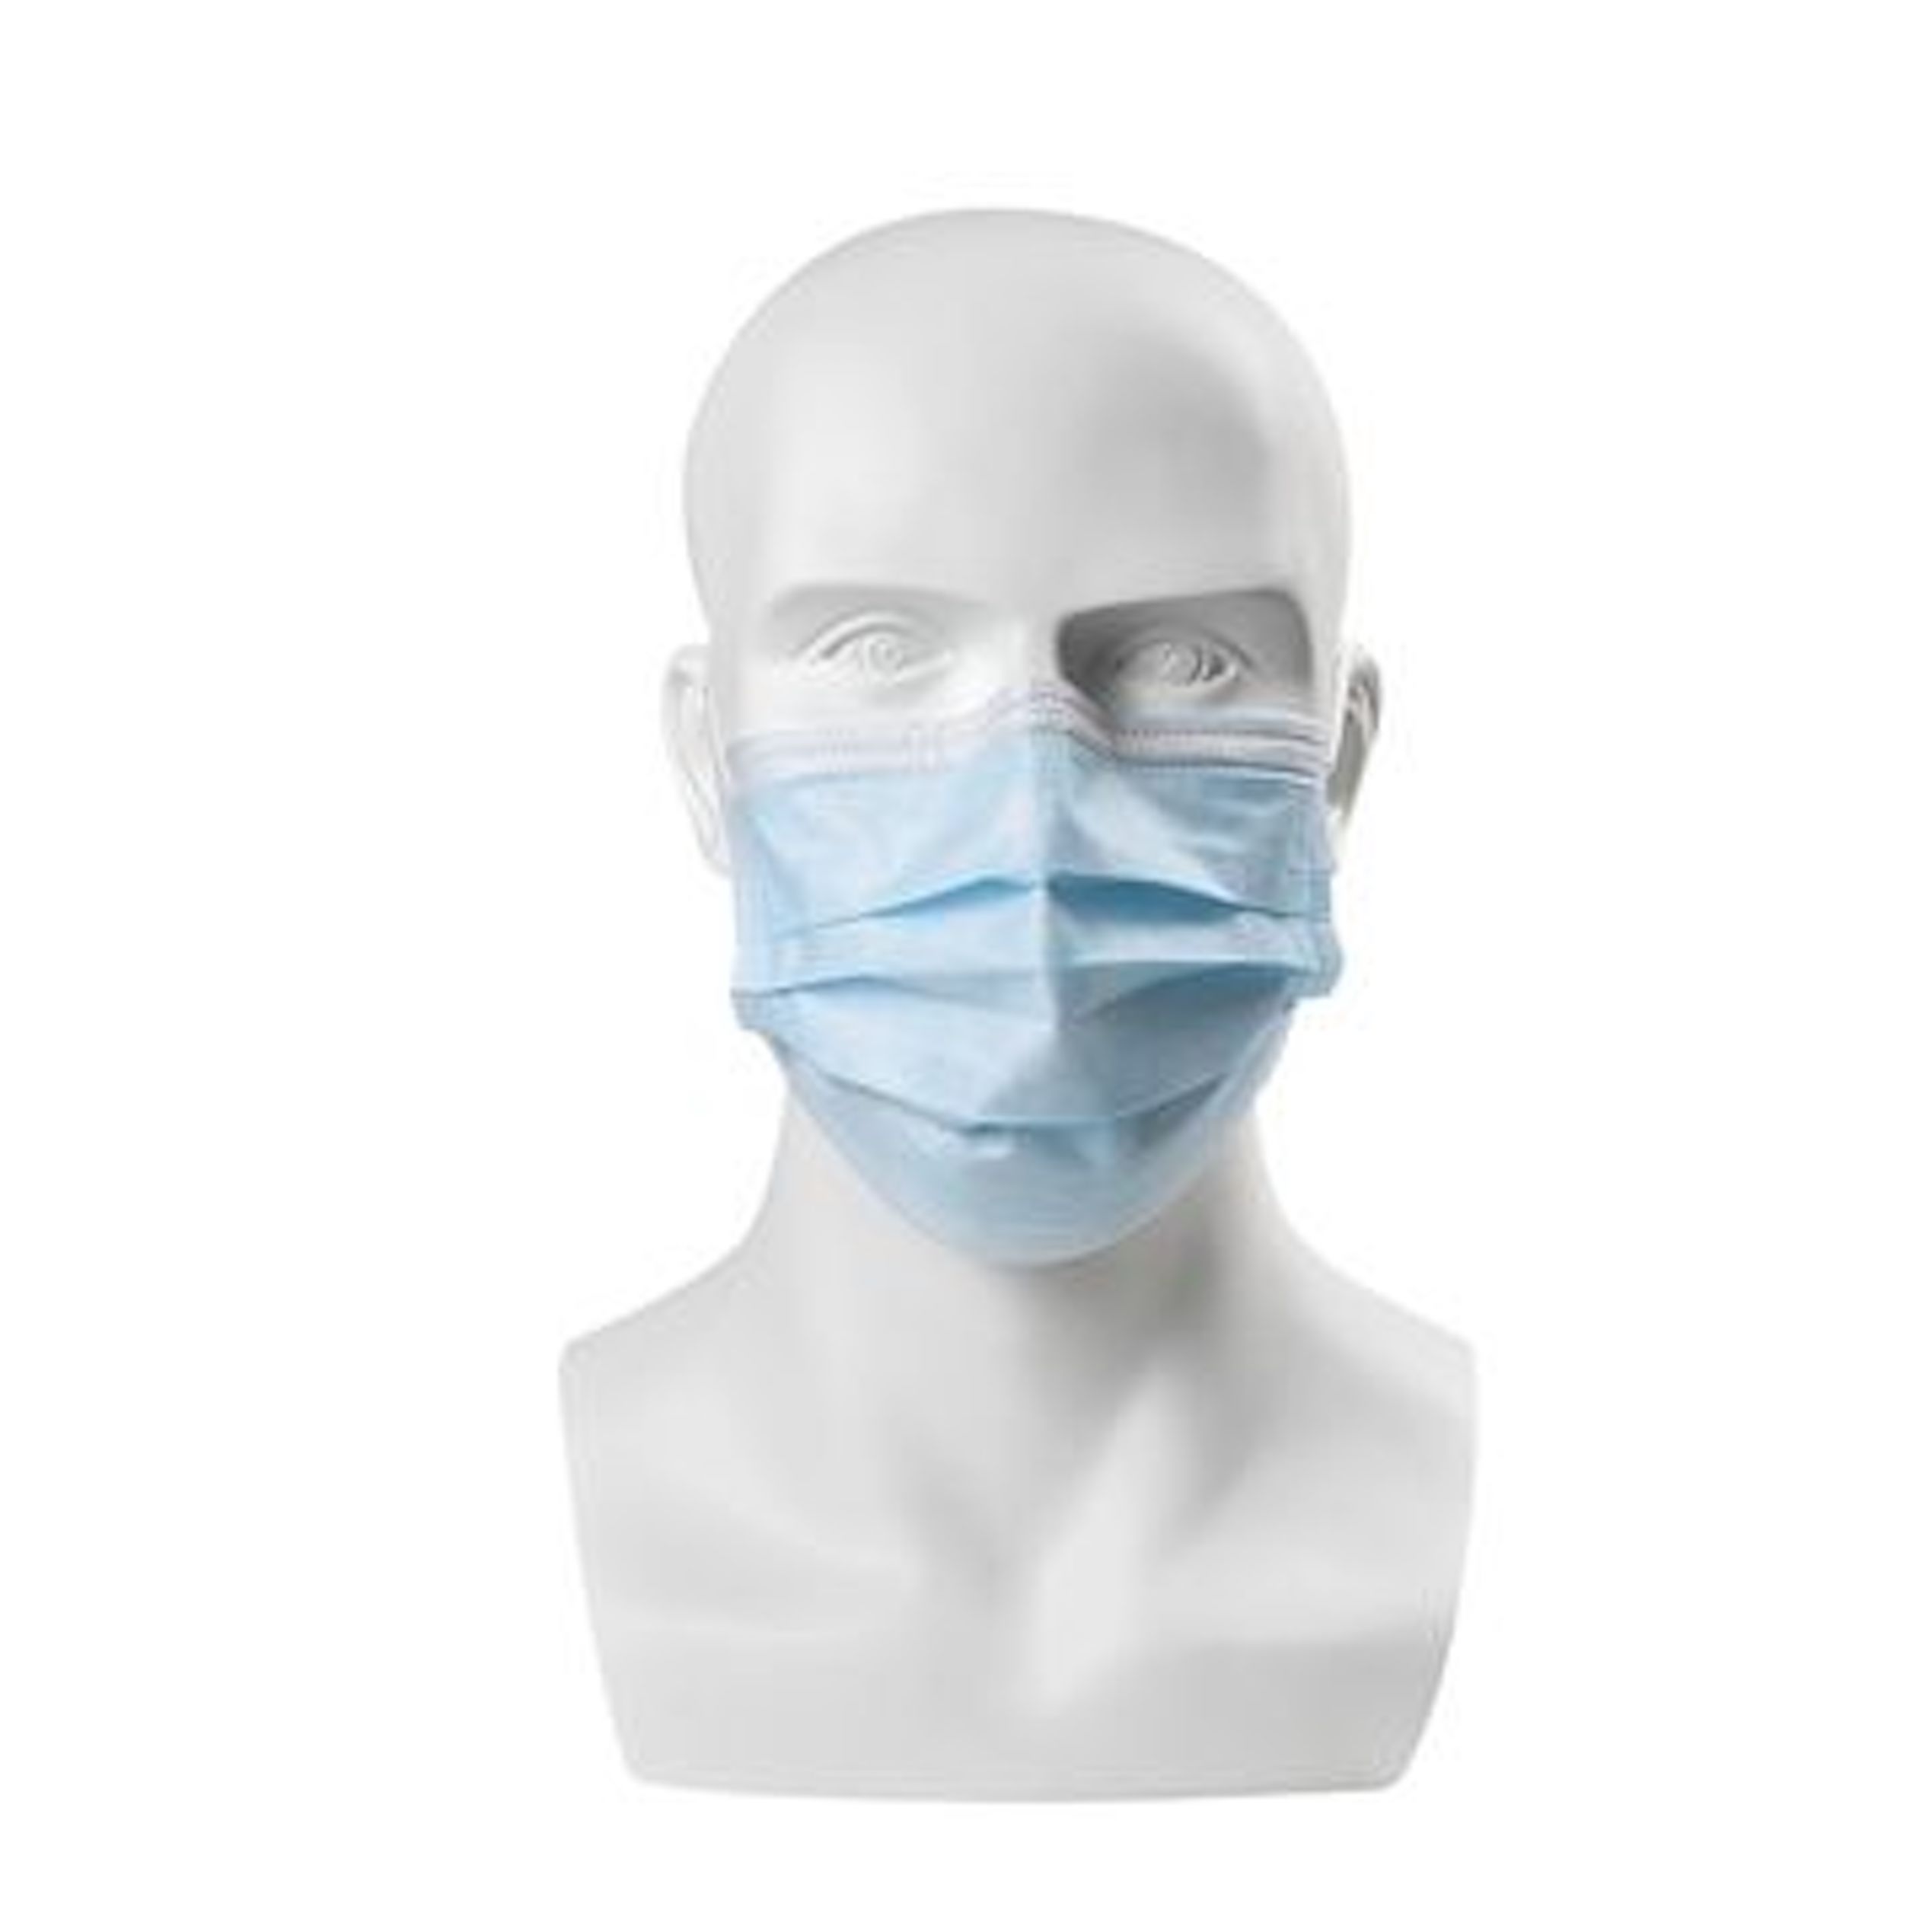 В какой аптеке маски. Маски face Mask Disposable. Surgical Mask 3ply. Маски лицевые одноразовые. Хирургическая маска для лица.